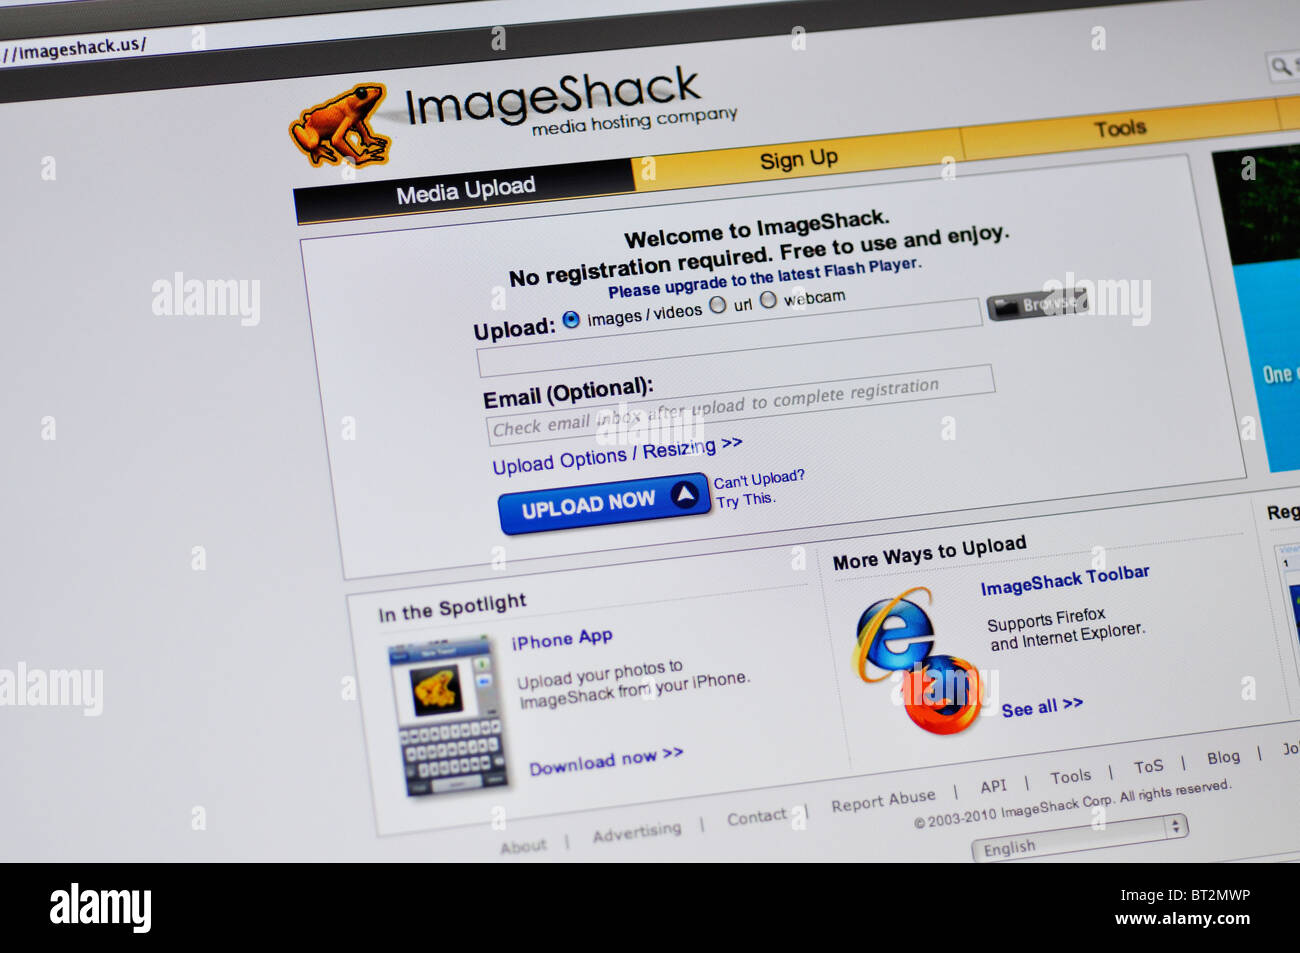 Imageshack free photo hosting website Stock Photo